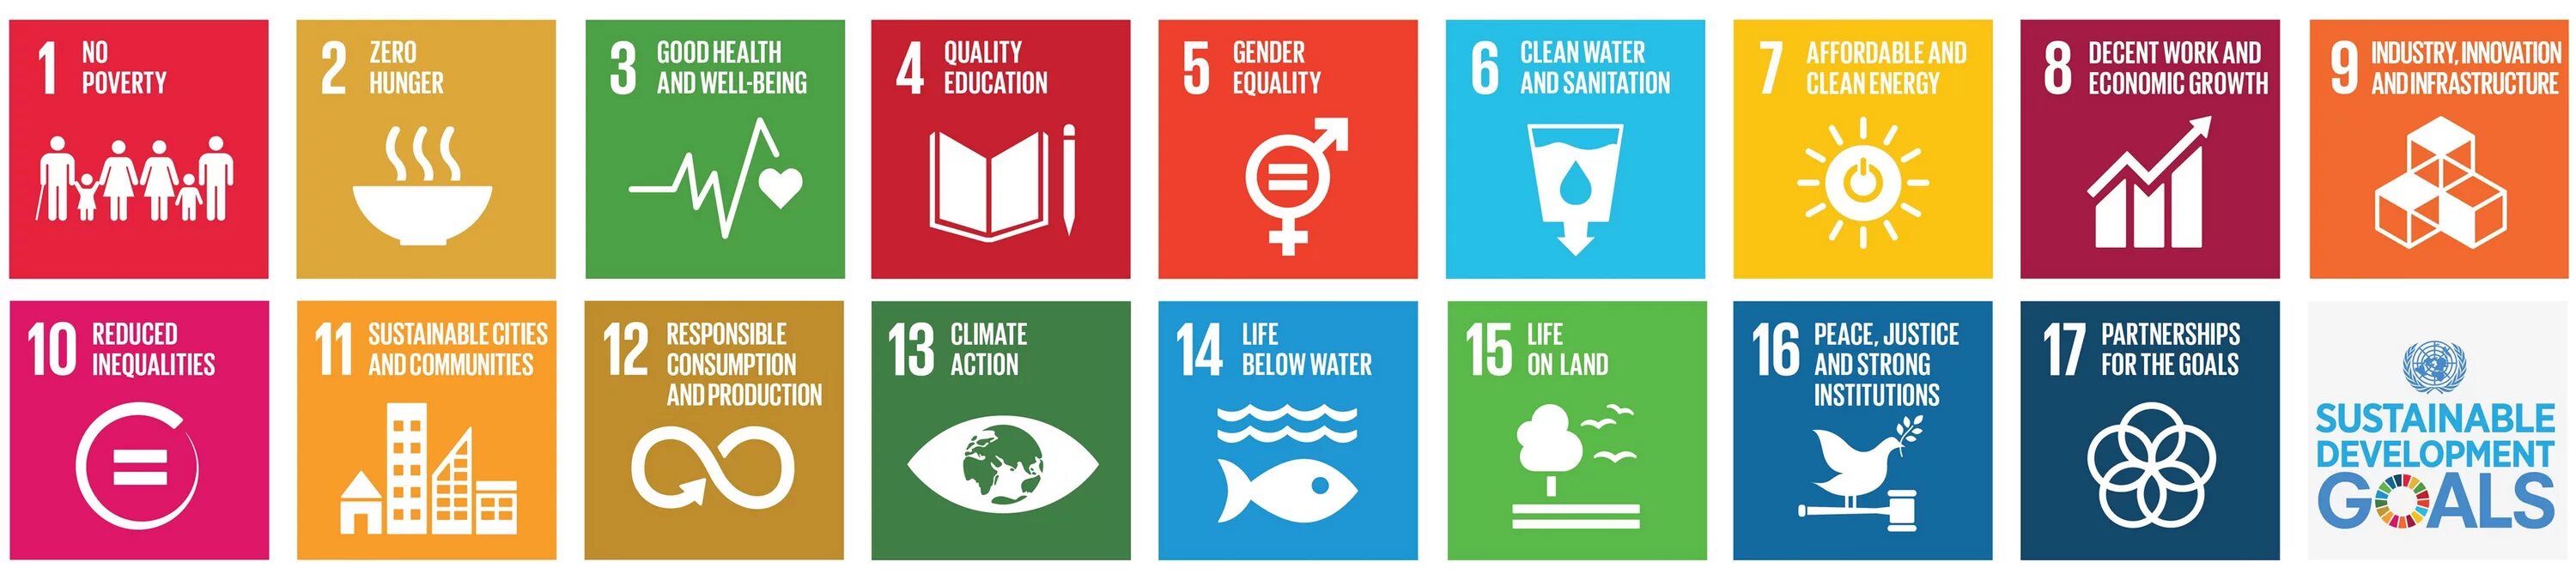 17 Целей устойчивого развития ООН. ЦУР ООН. Цели устойчивого развития ООН. SDG цели устойчивого развития. Цели оон 2015